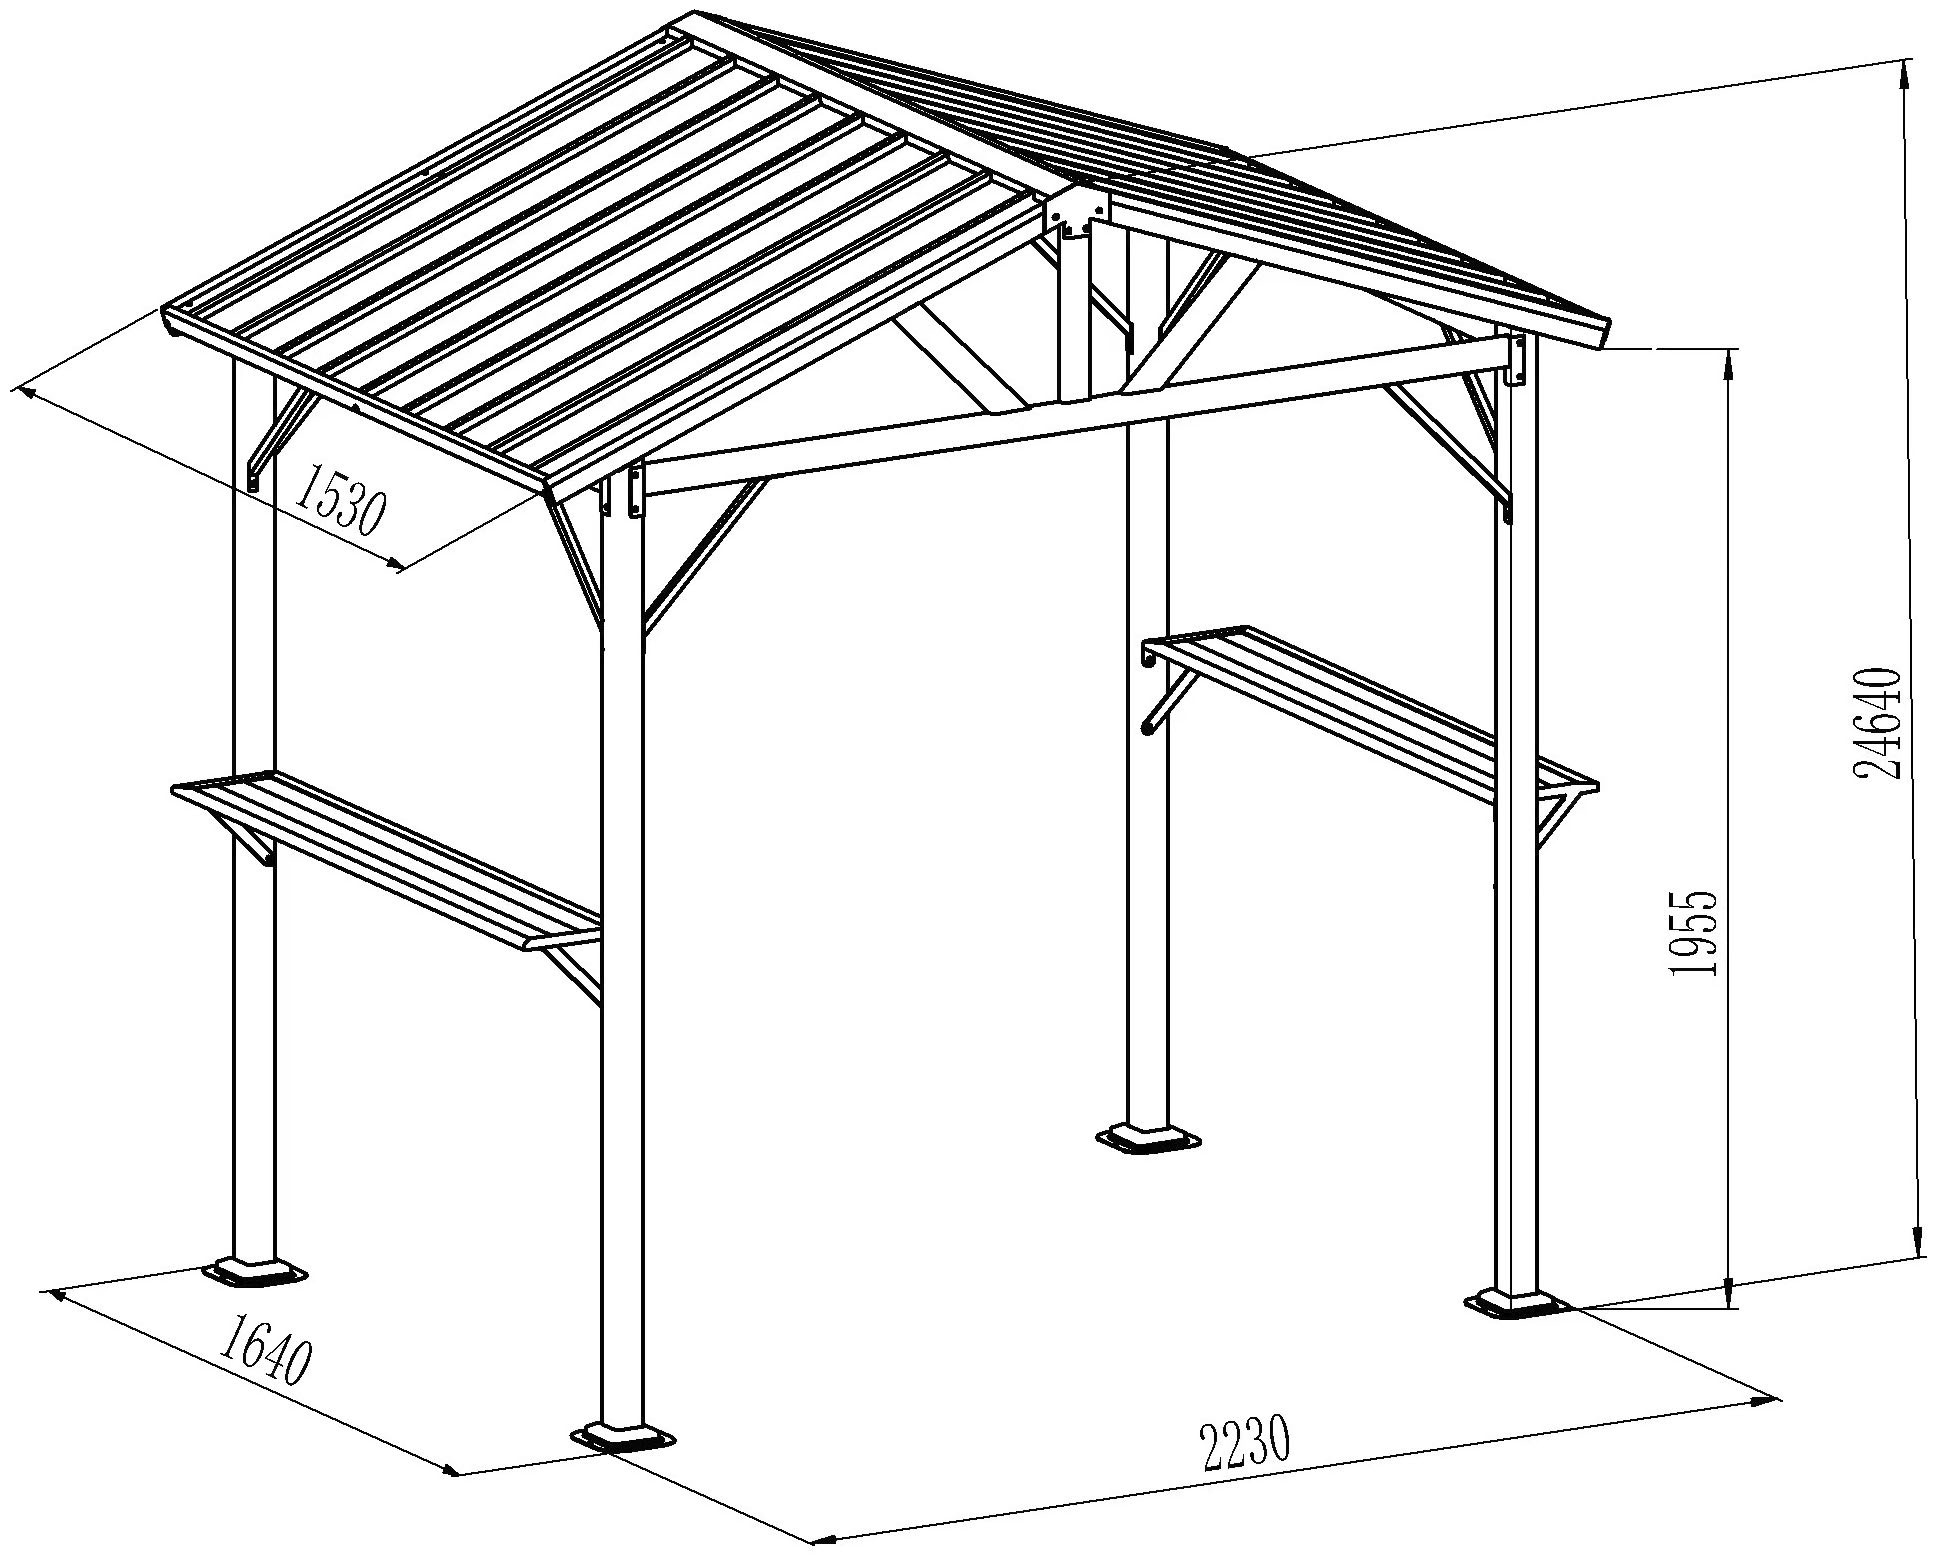 KONIFERA Grillpavillon »Lissabon«, BxT: 244x153 cm, mit verzinktem Stahldach und Stahlgestell